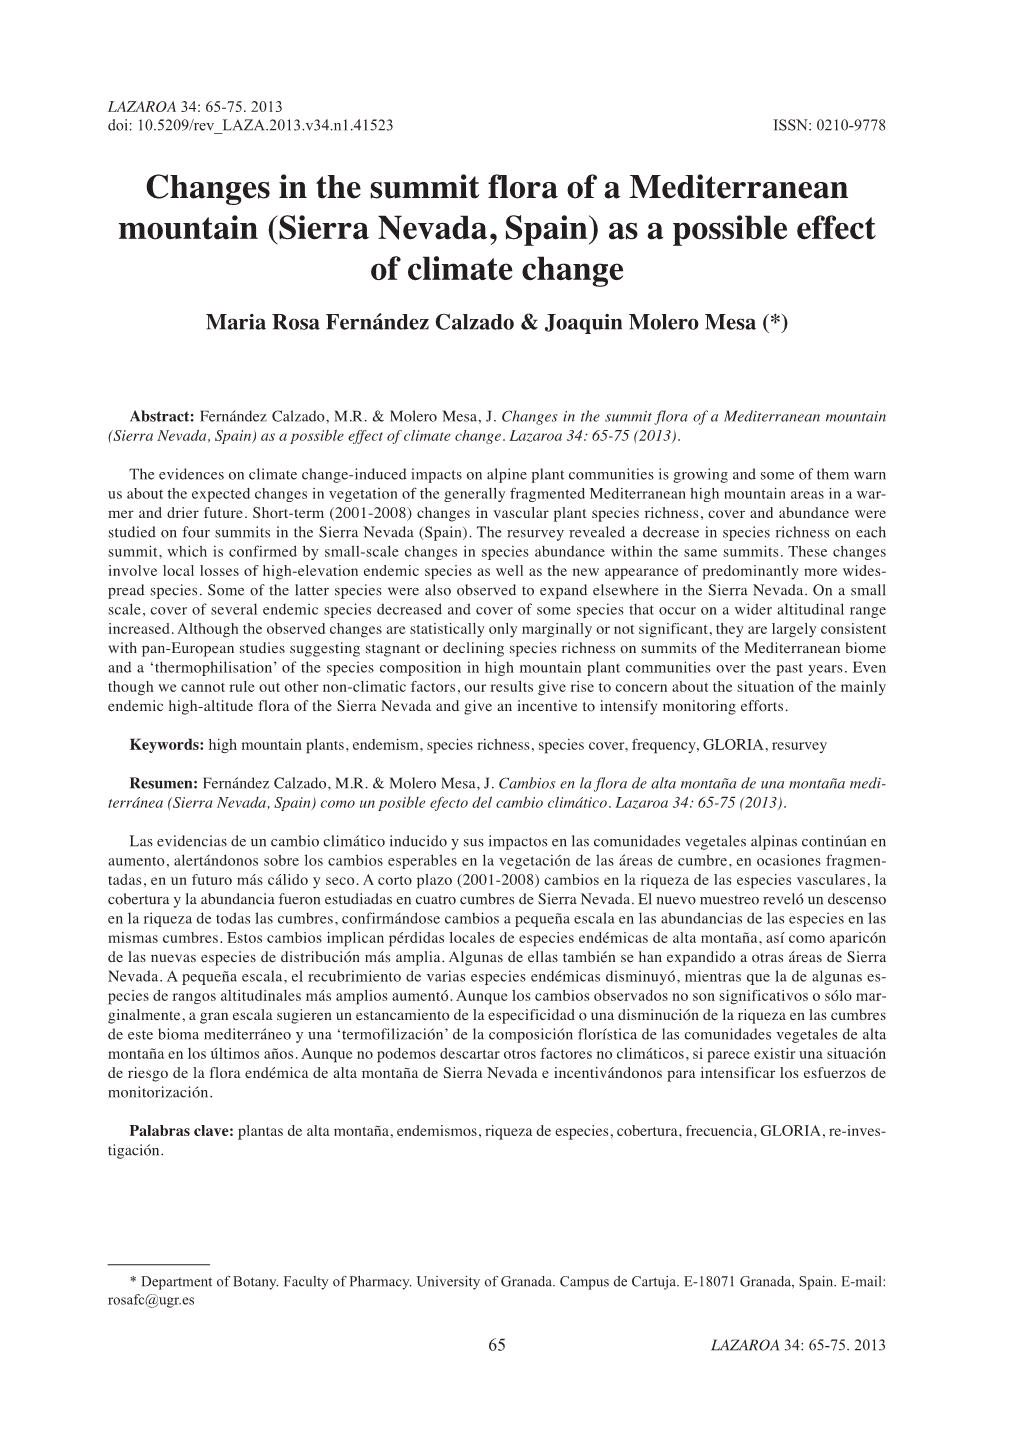 Changes in the Summit Flora of a Mediterranean Mountain (Sierra